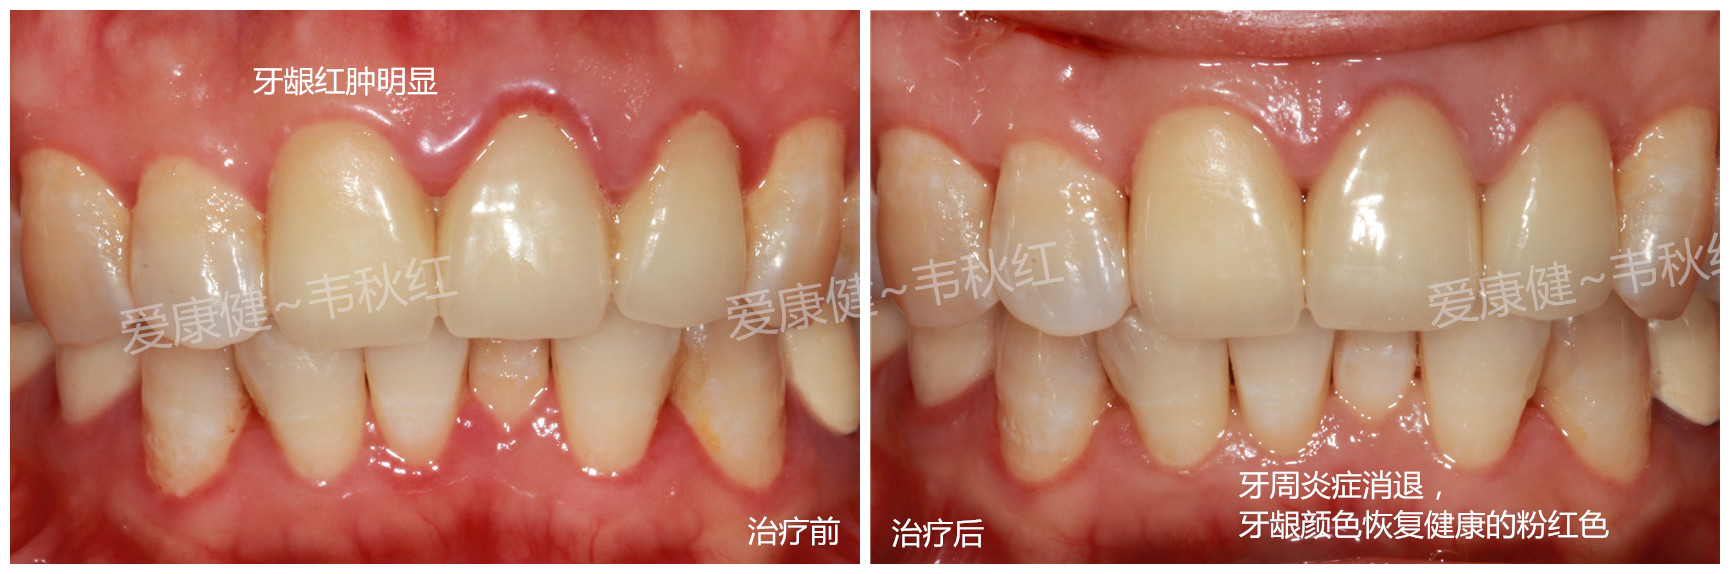 牙周治疗前后图片图片